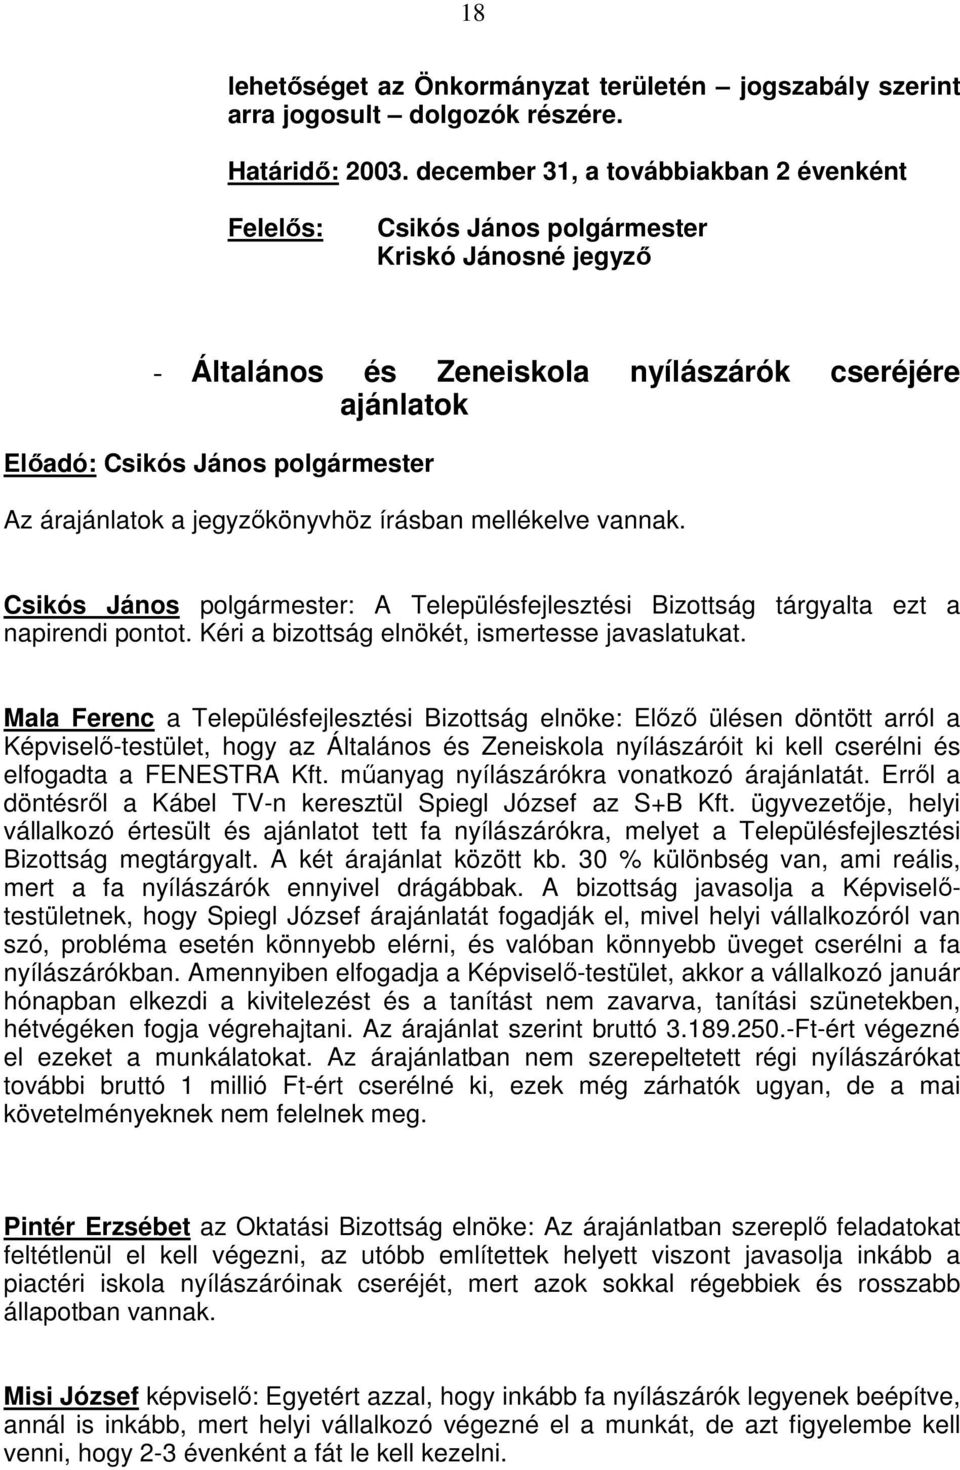 árajánlatok a jegyzıkönyvhöz írásban mellékelve vannak. Csikós János polgármester: A Településfejlesztési Bizottság tárgyalta ezt a napirendi pontot. Kéri a bizottság elnökét, ismertesse javaslatukat.